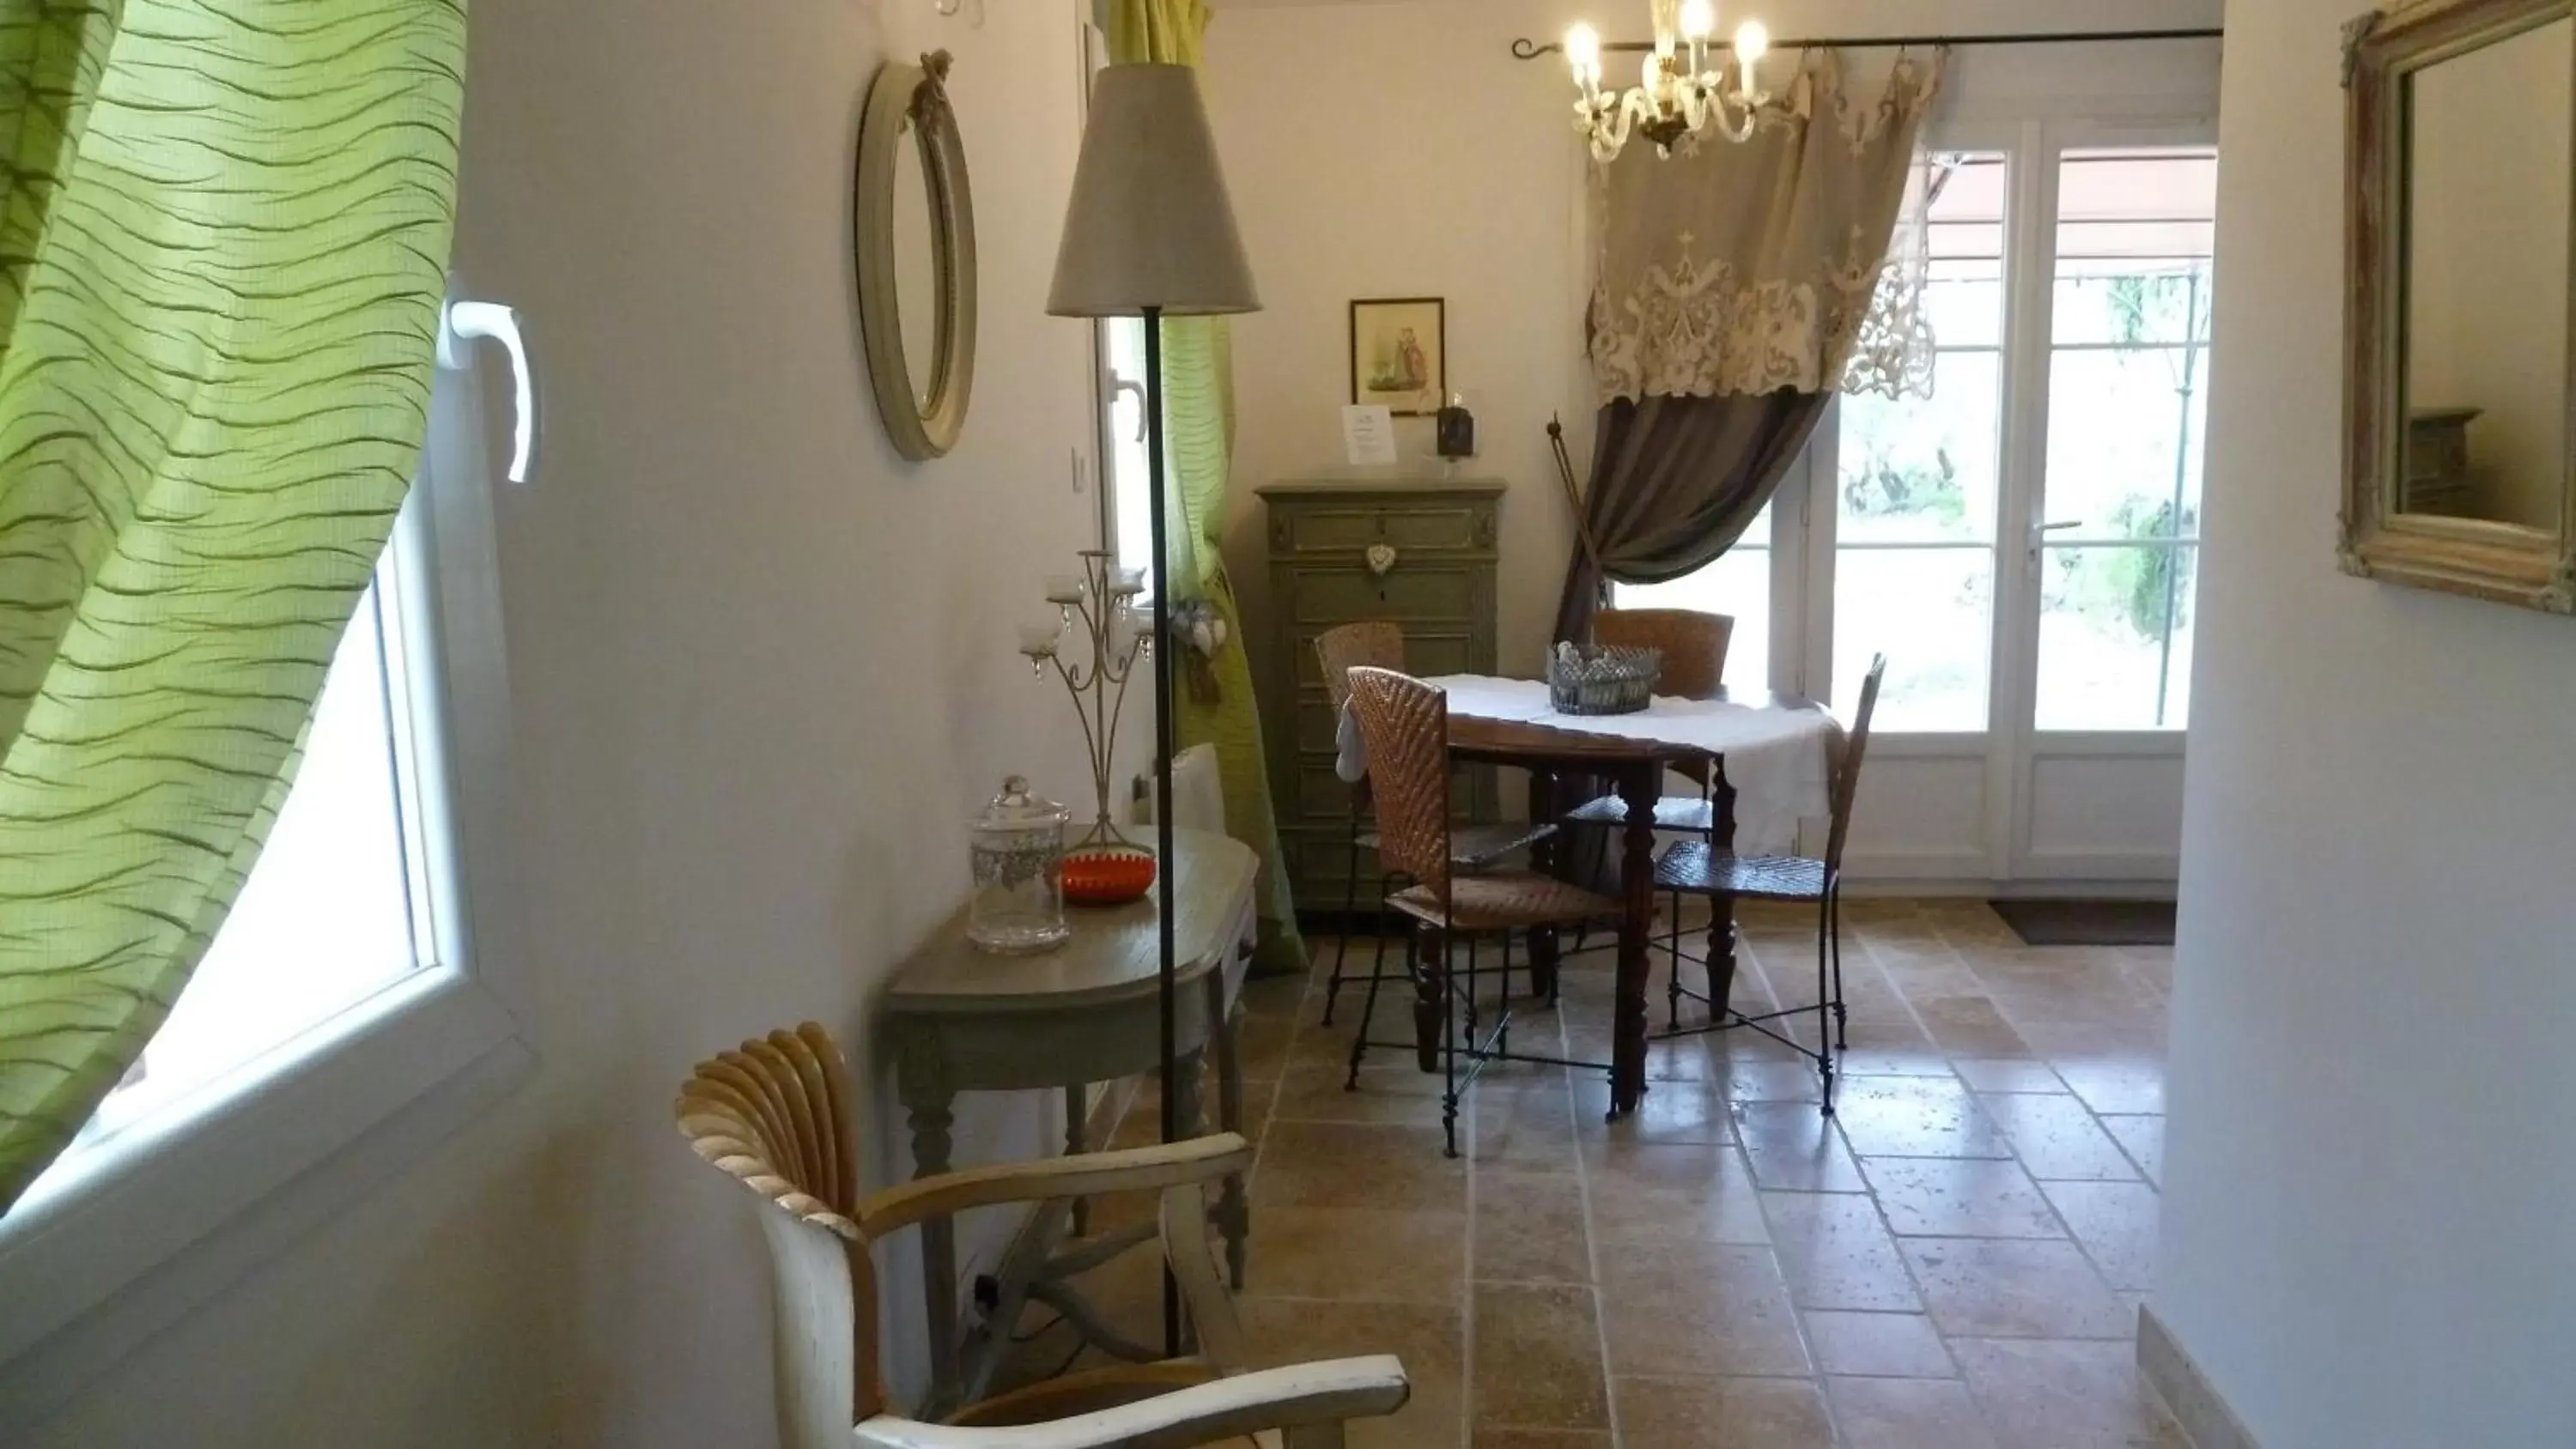 Area and facilities, Dining Area in Mas de l'Olivette